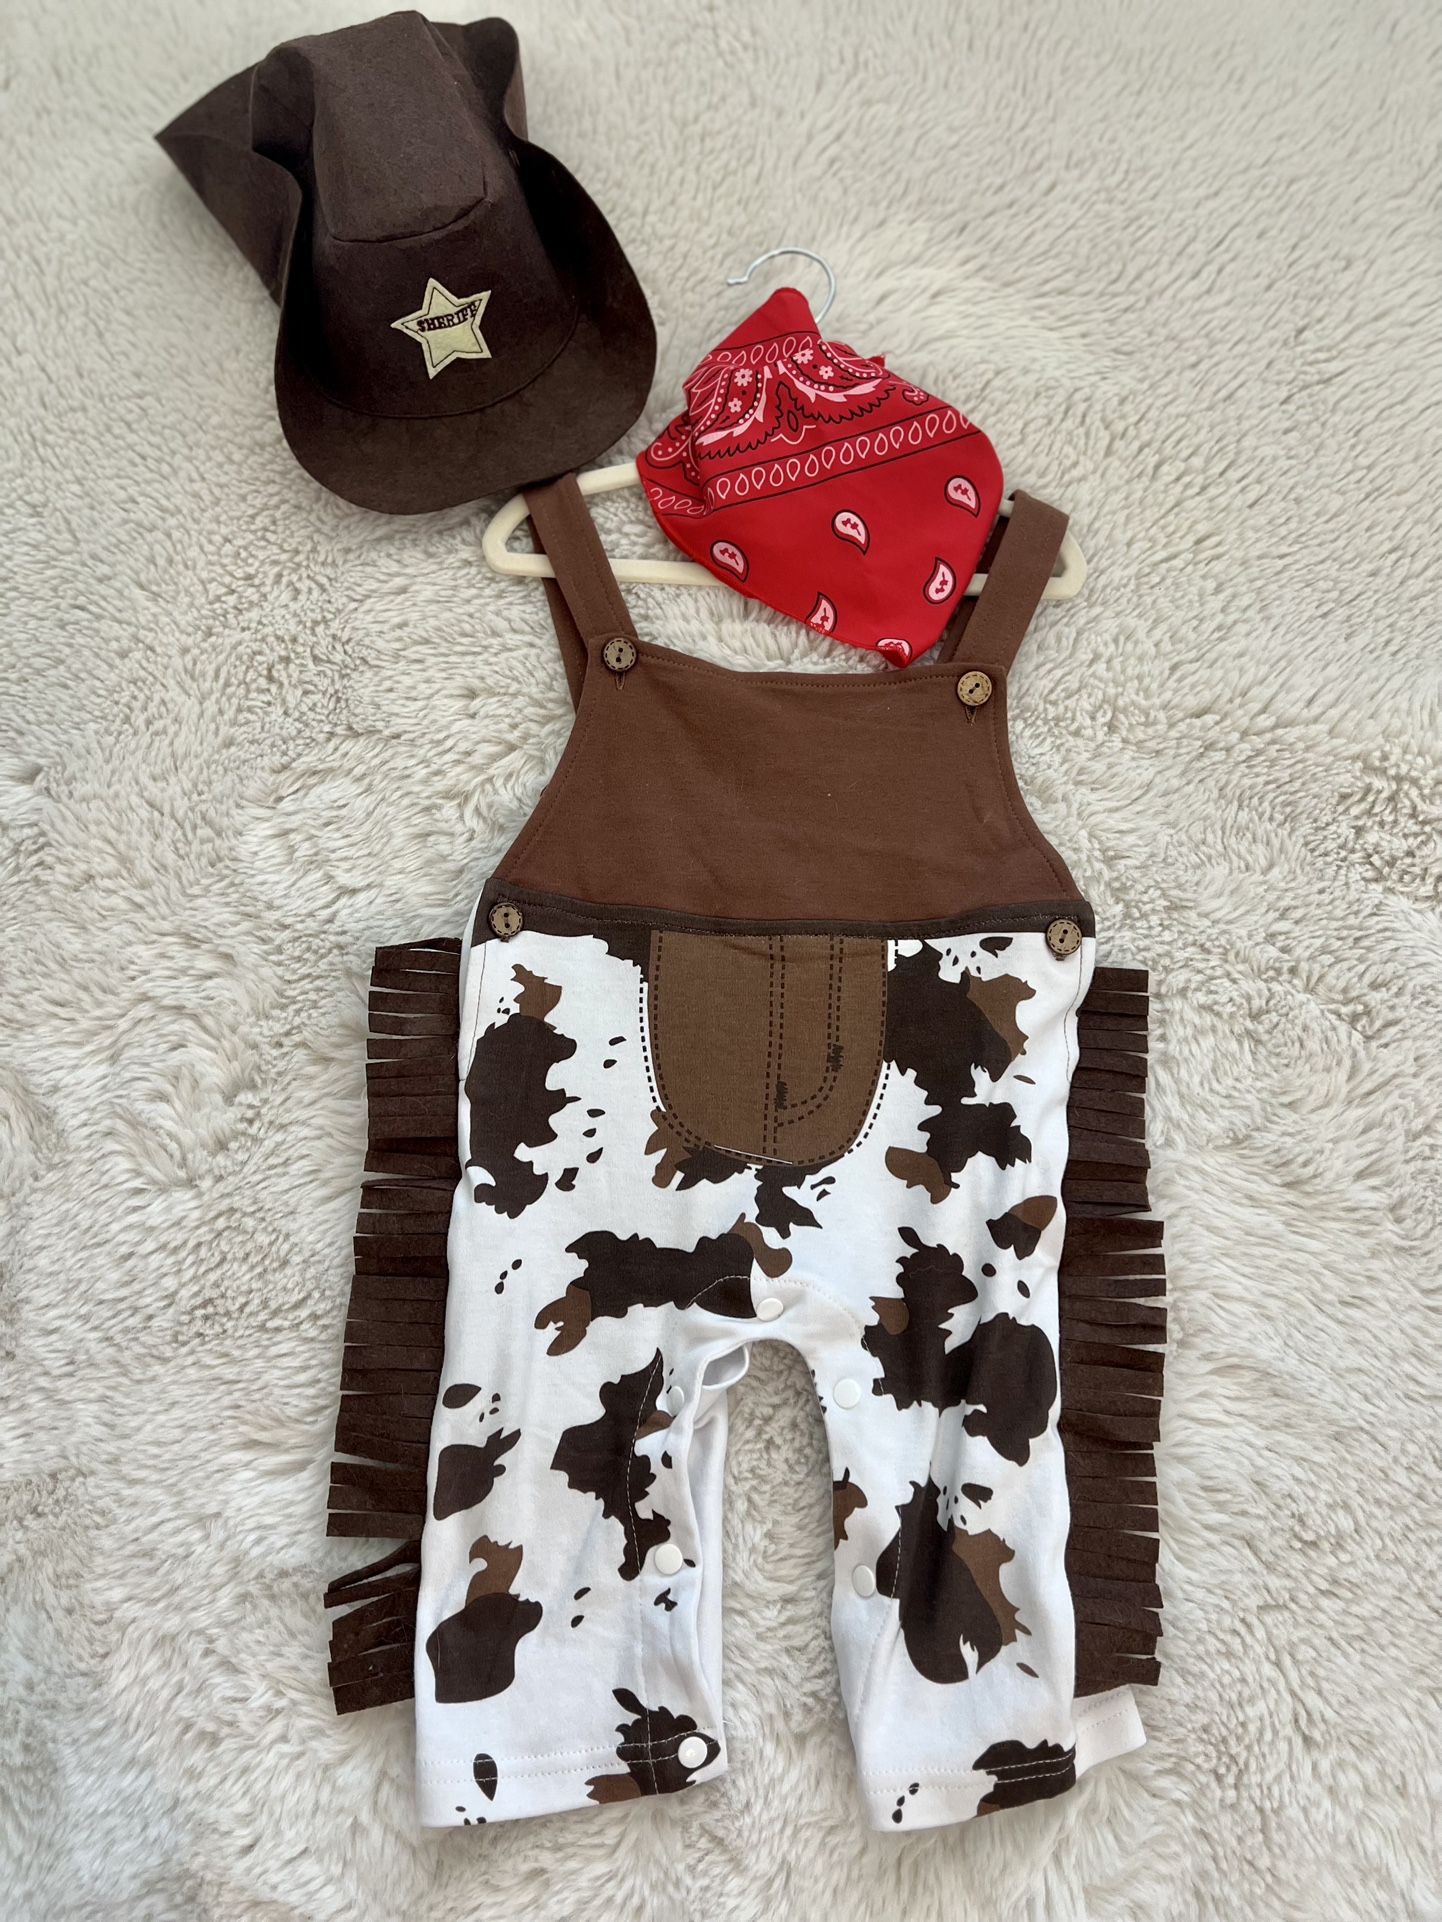  Baby Boy Wild West Cowboy Costume 6-12M